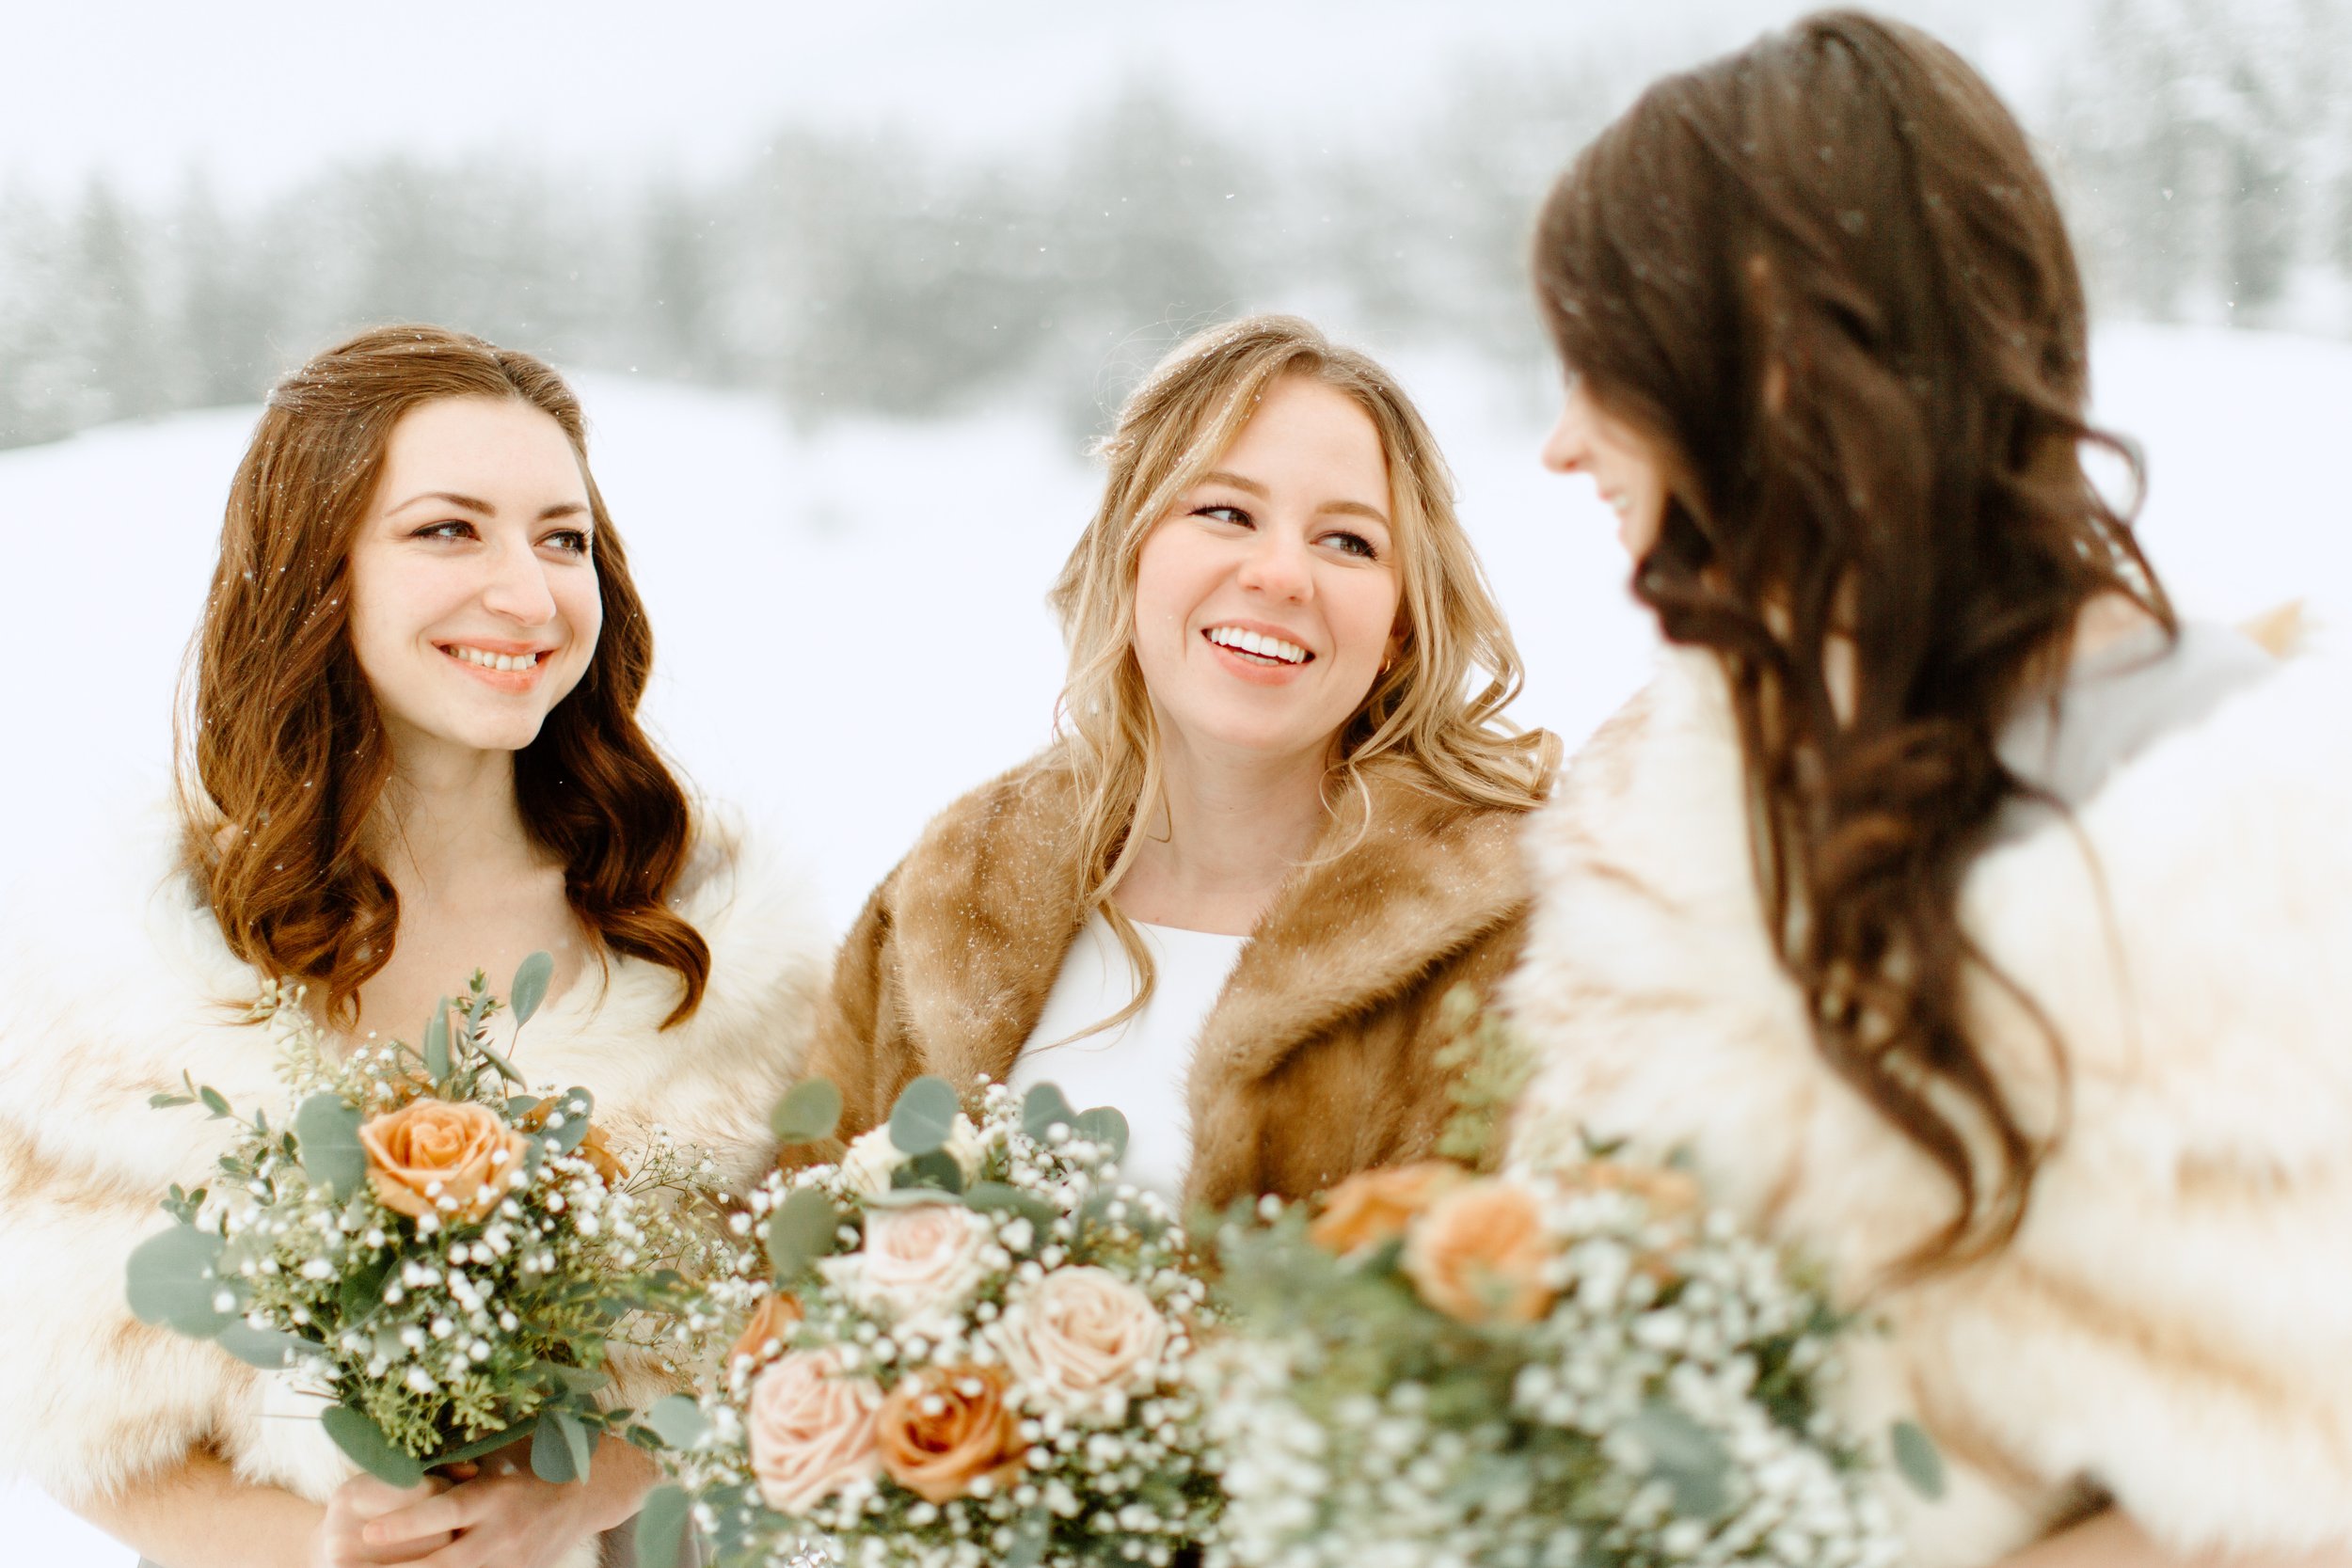 invermere-winter-wedding-31.jpg